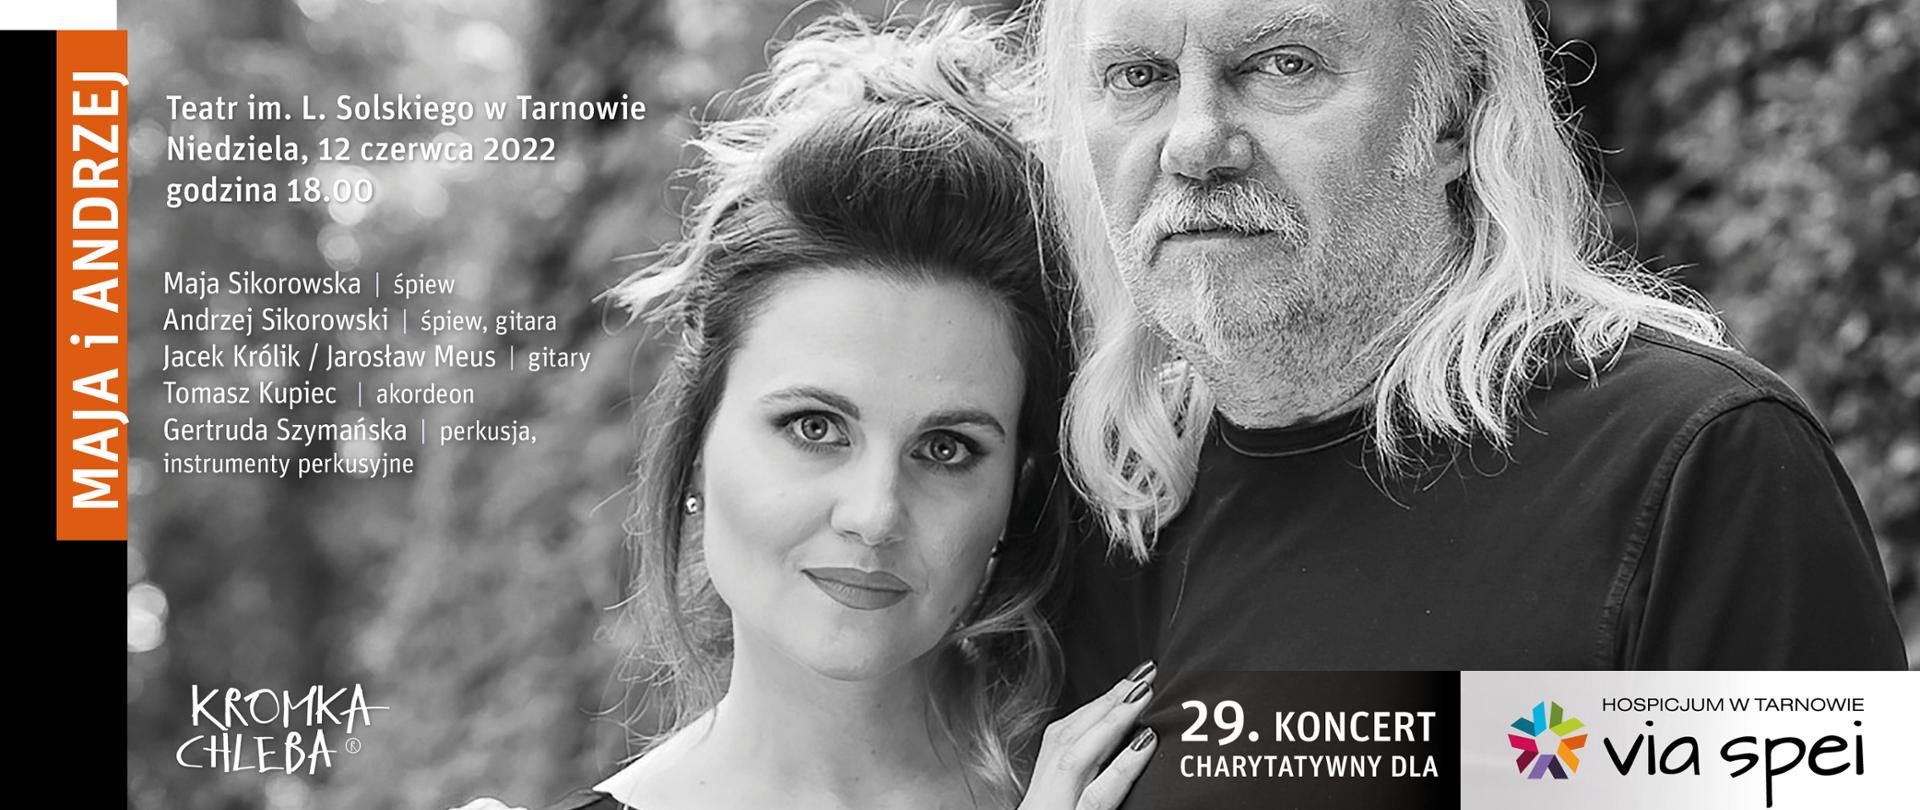 plakat informacyjny dotyczący koncertu charytatywnego w tle zdjęcie artystów: Mai Sikorowskiej i Andrzeja Sikorowskiego